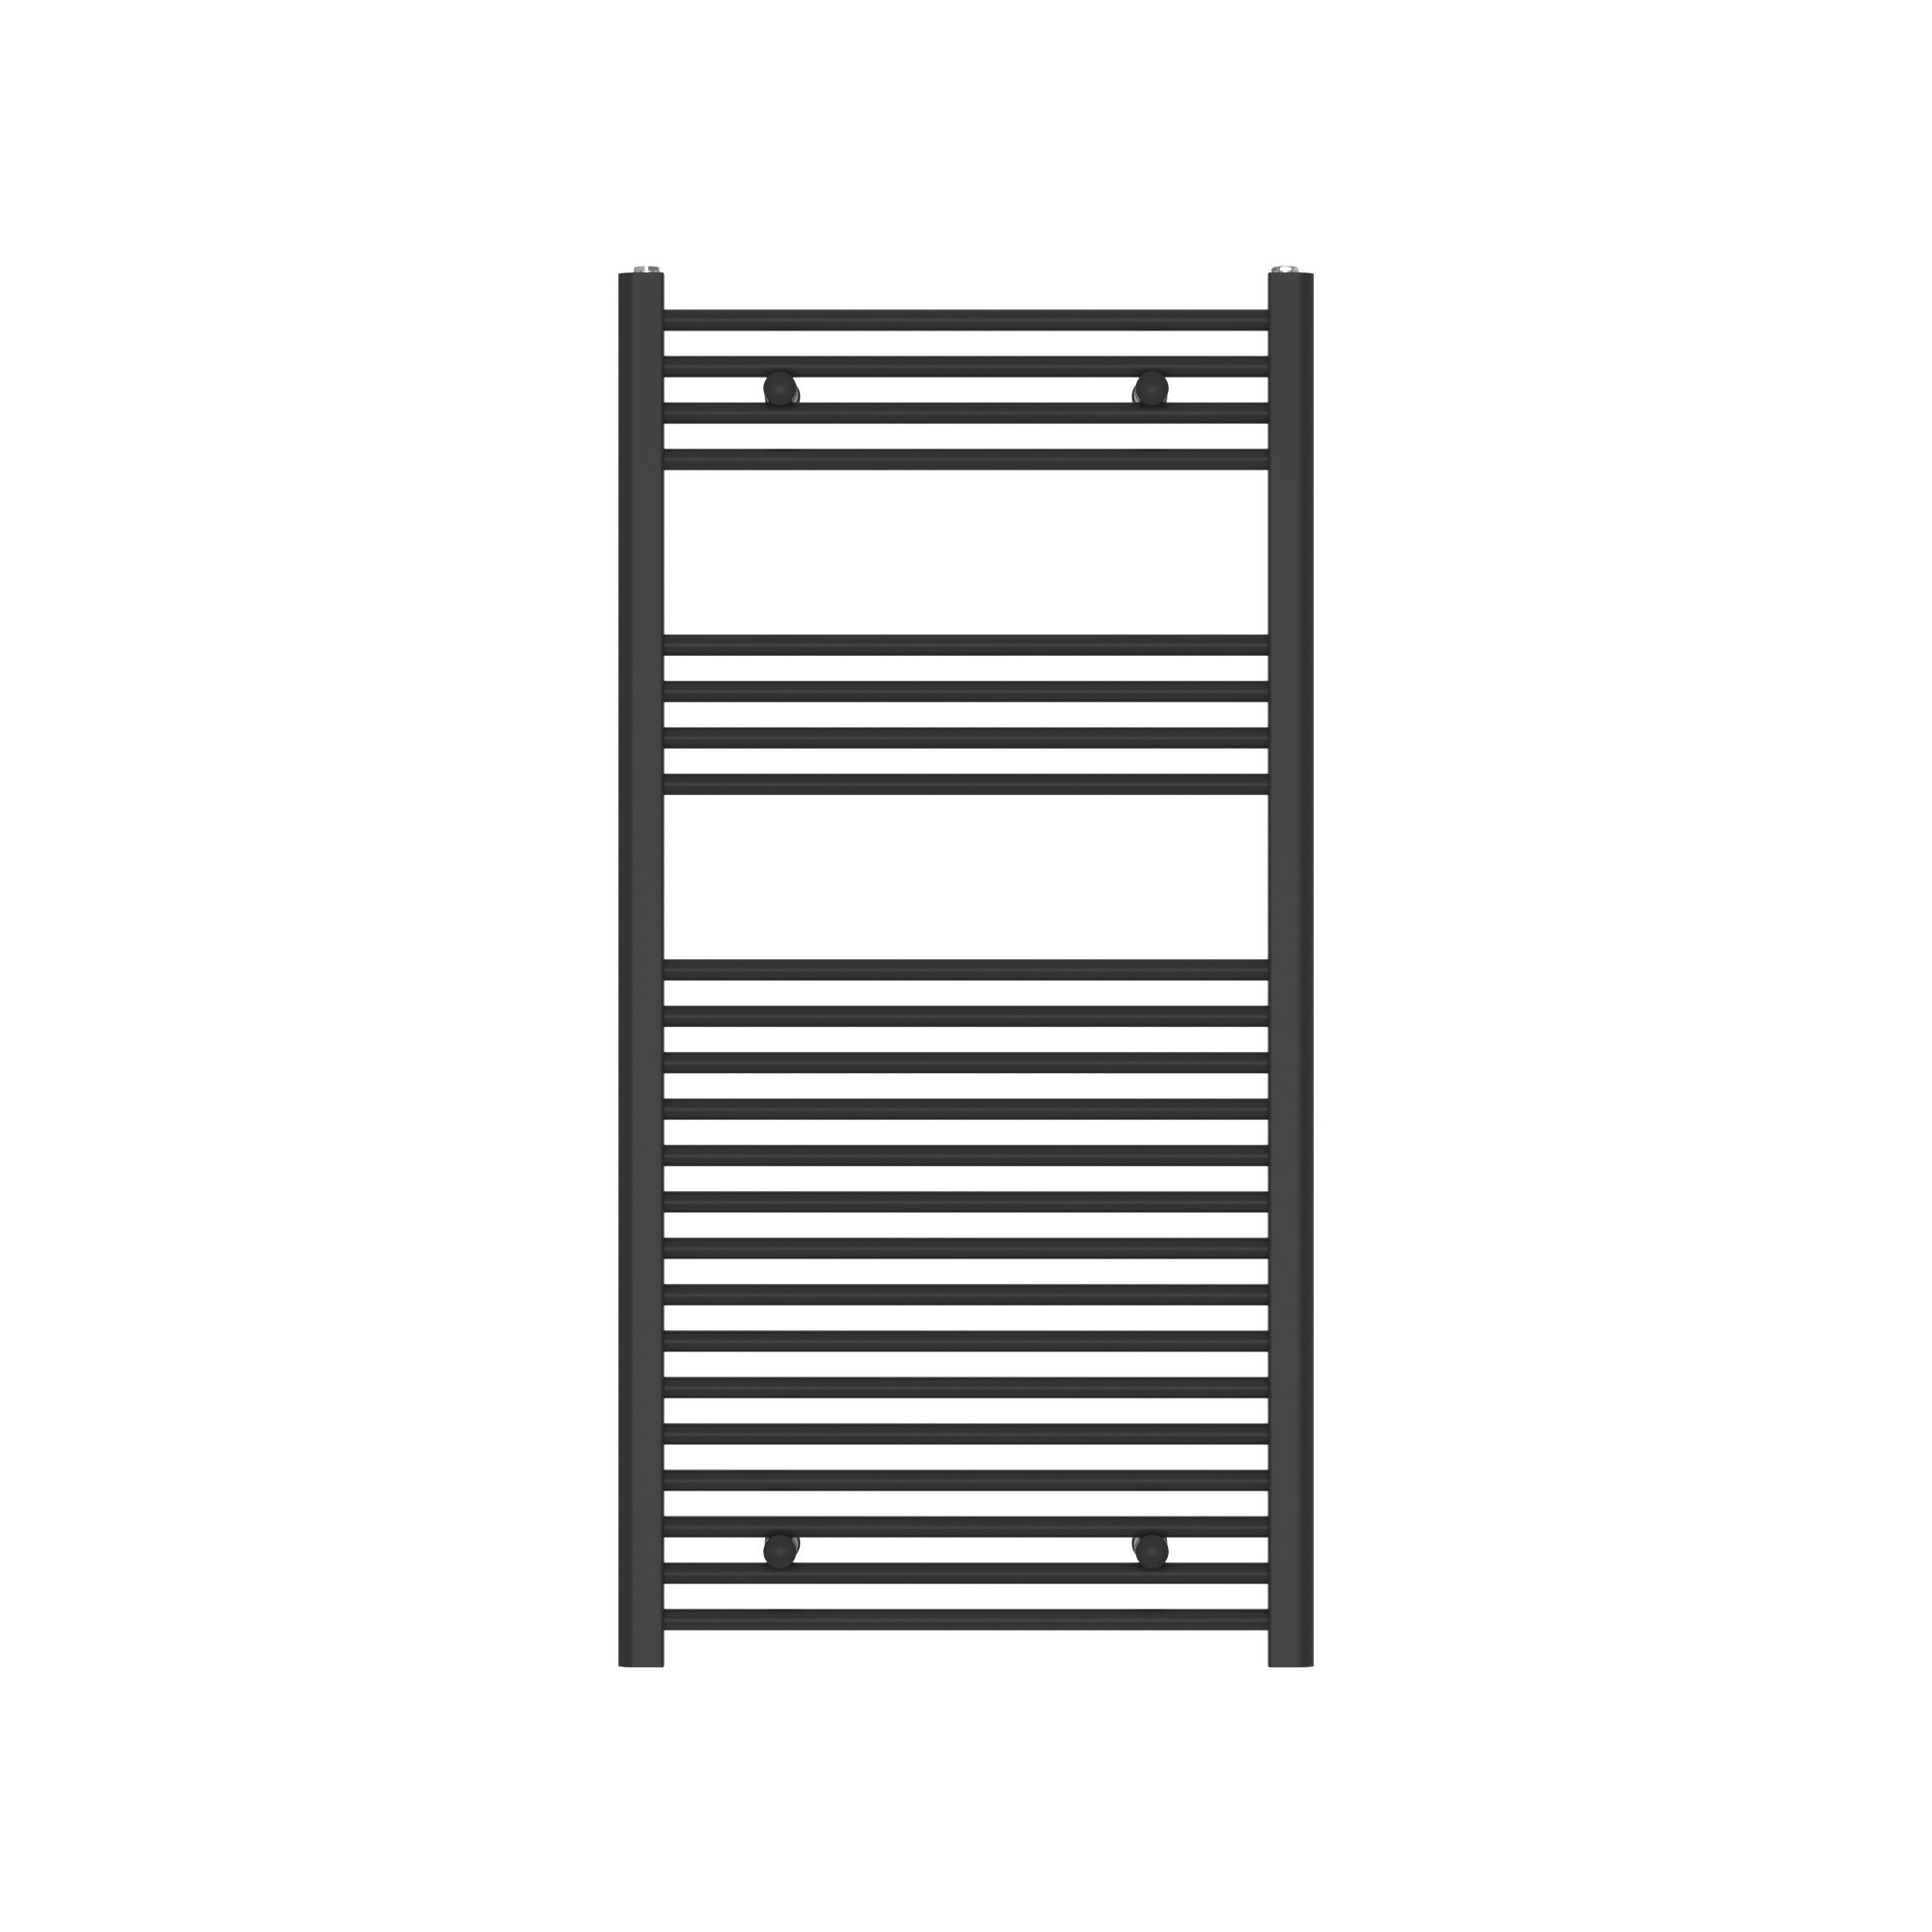 Flomasta Flat, Black Vertical Flat Towel radiator (W)600mm x (H)1200mm